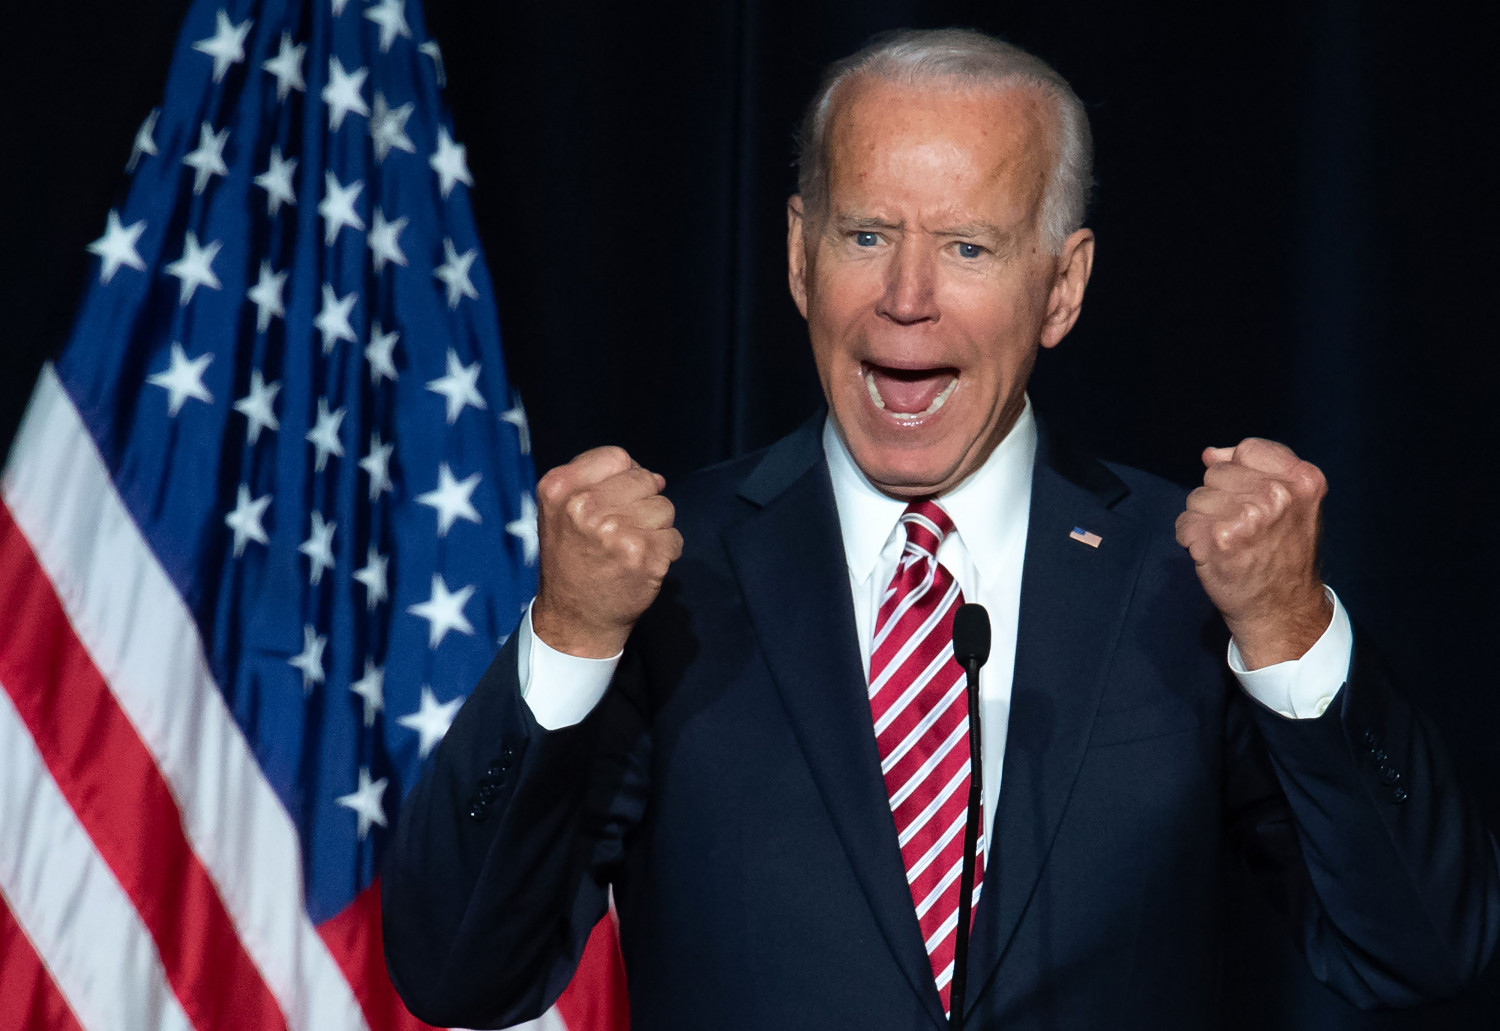 Unearthed 2006 Video of Joe Biden Reveals Him Speaking in ‘Trumpian’ Tone